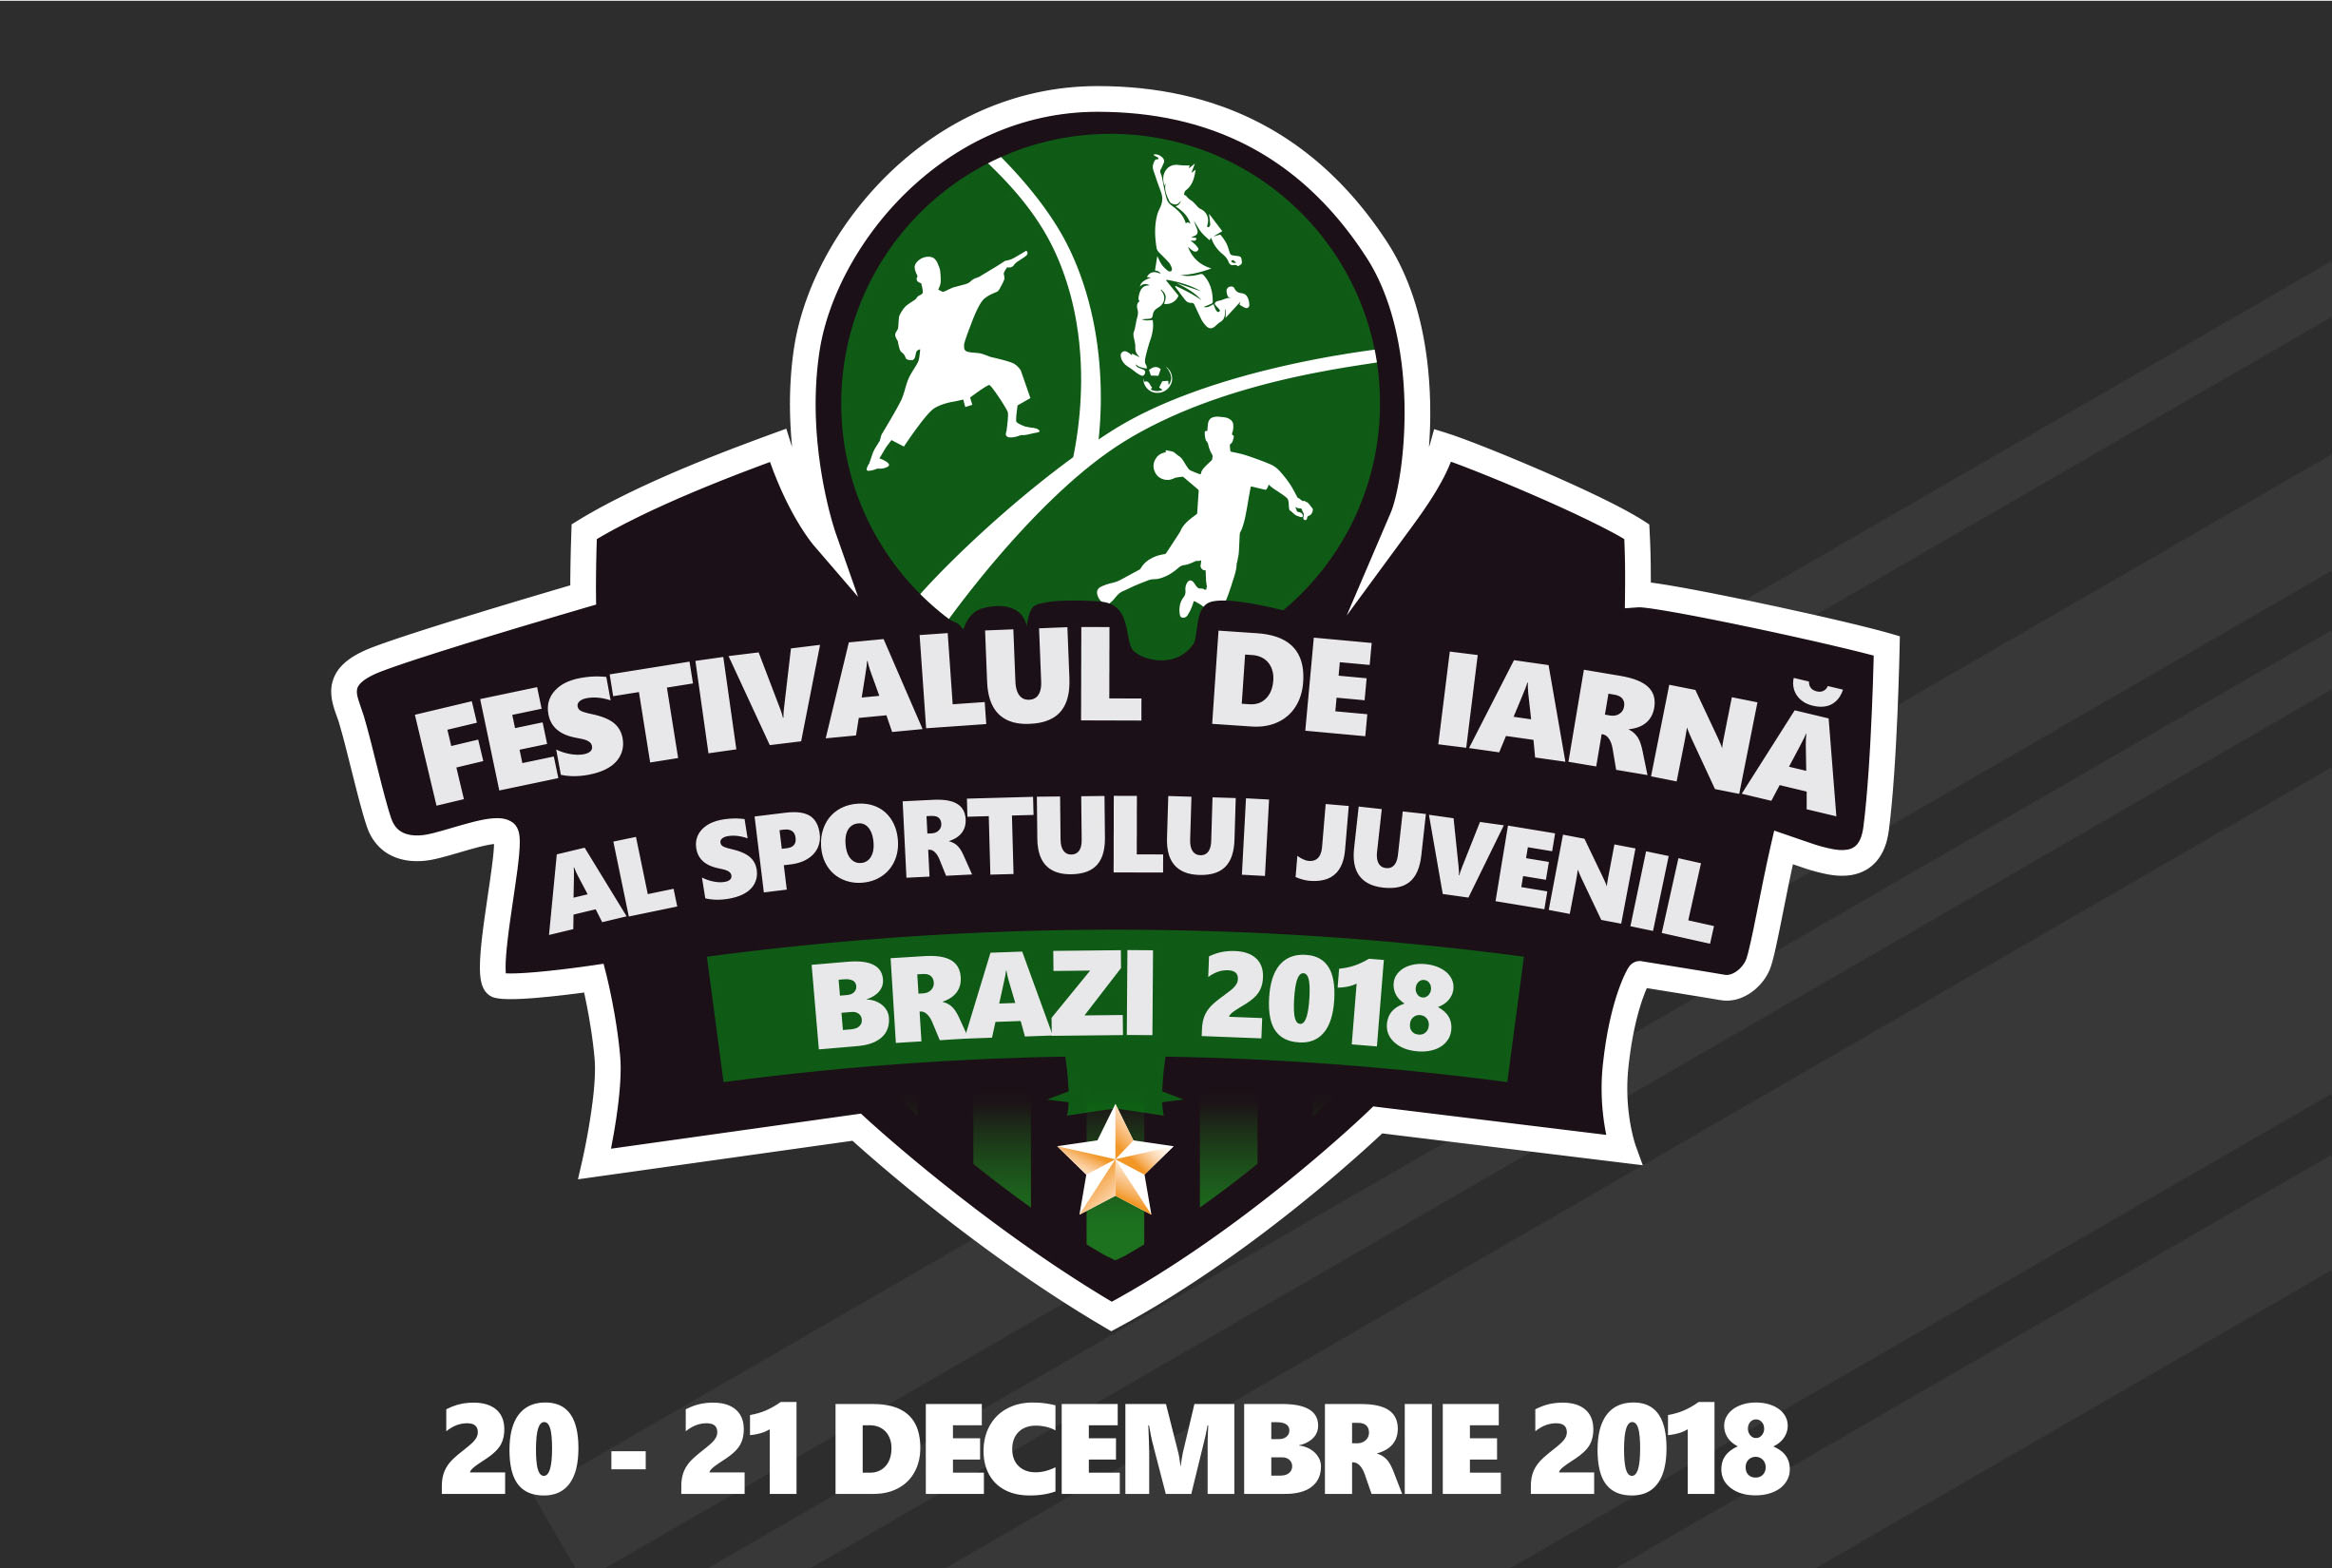  Festivalul de iarna al sportului juvenil la Brazi 2018